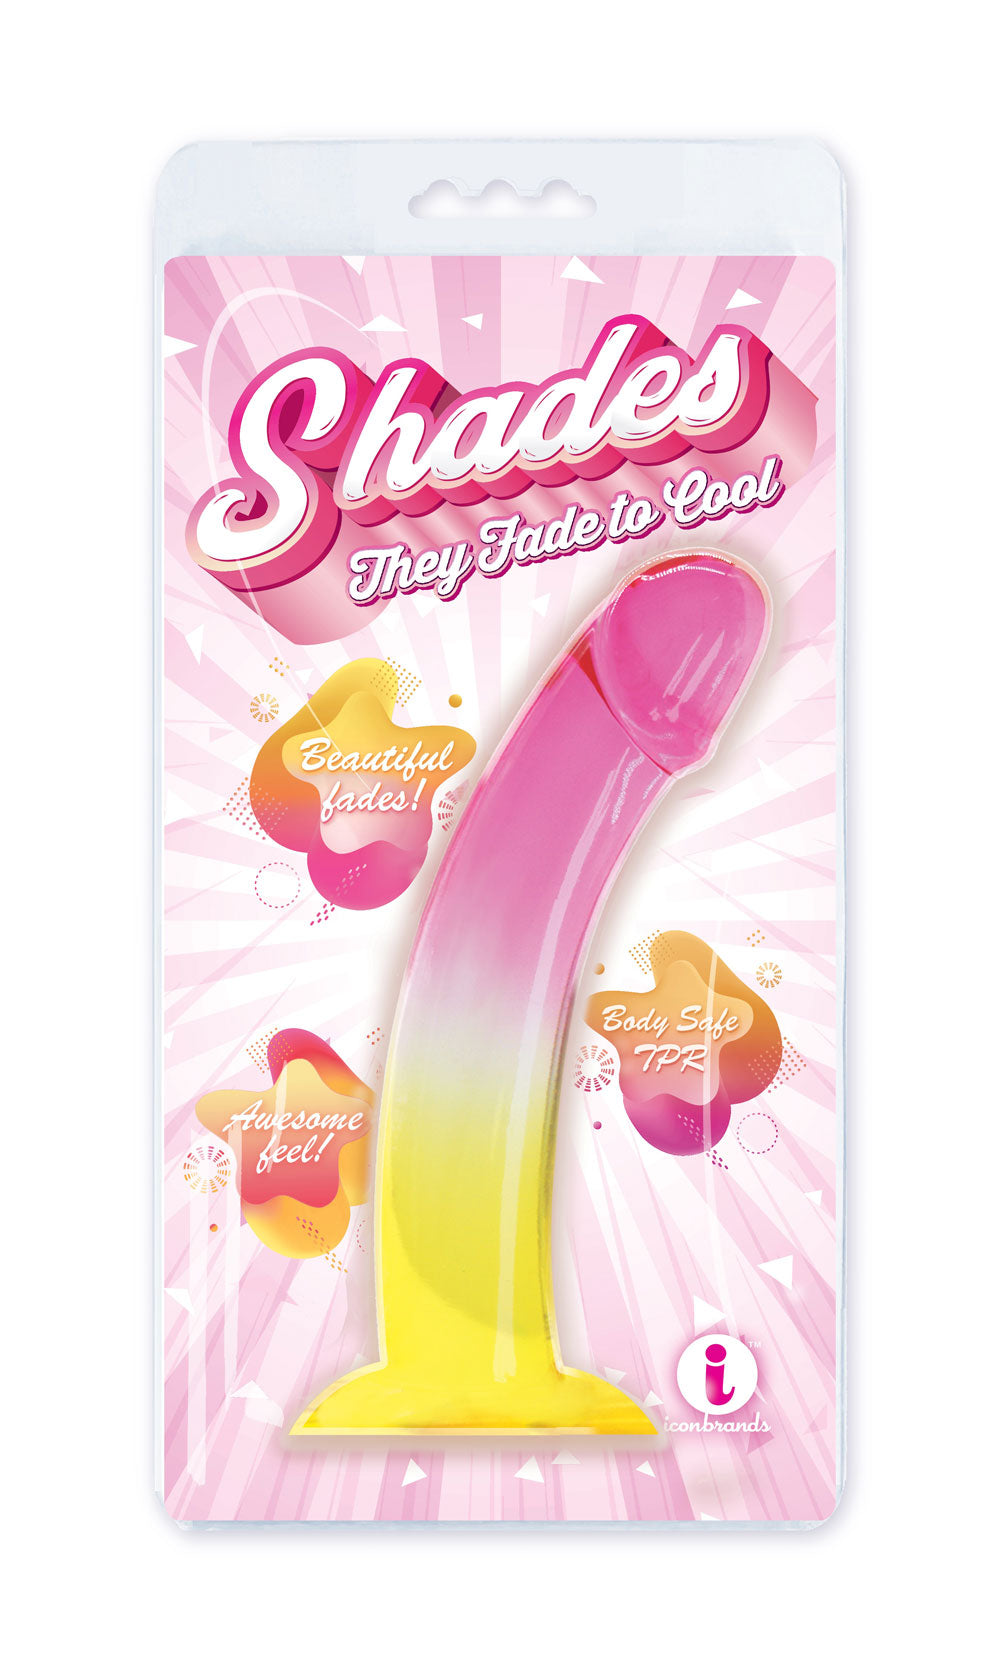 Shades, Dong degradado Smoothie Jelly Tpr de 8,25&quot; - rosa y amarillo